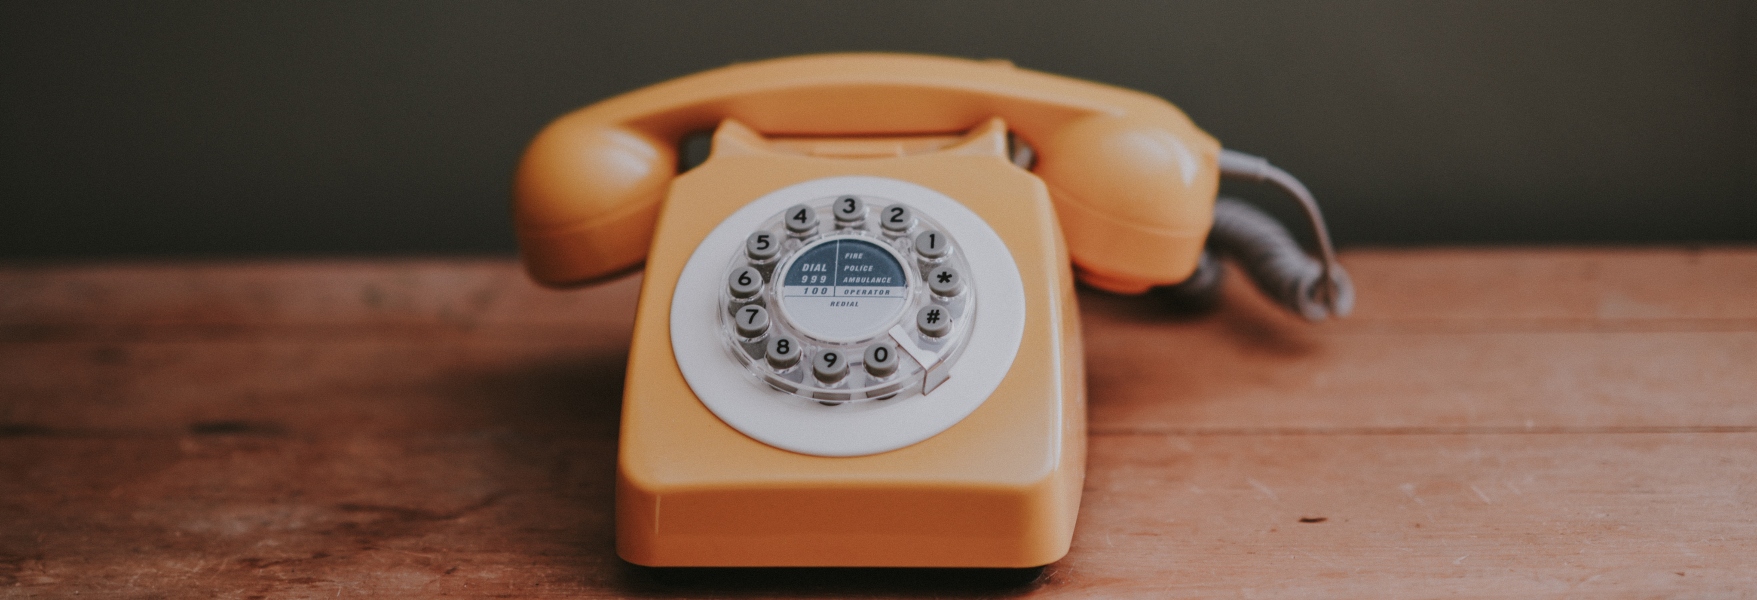 Quién inventó el teléfono? Desmintiendo a Graham Bell su idea